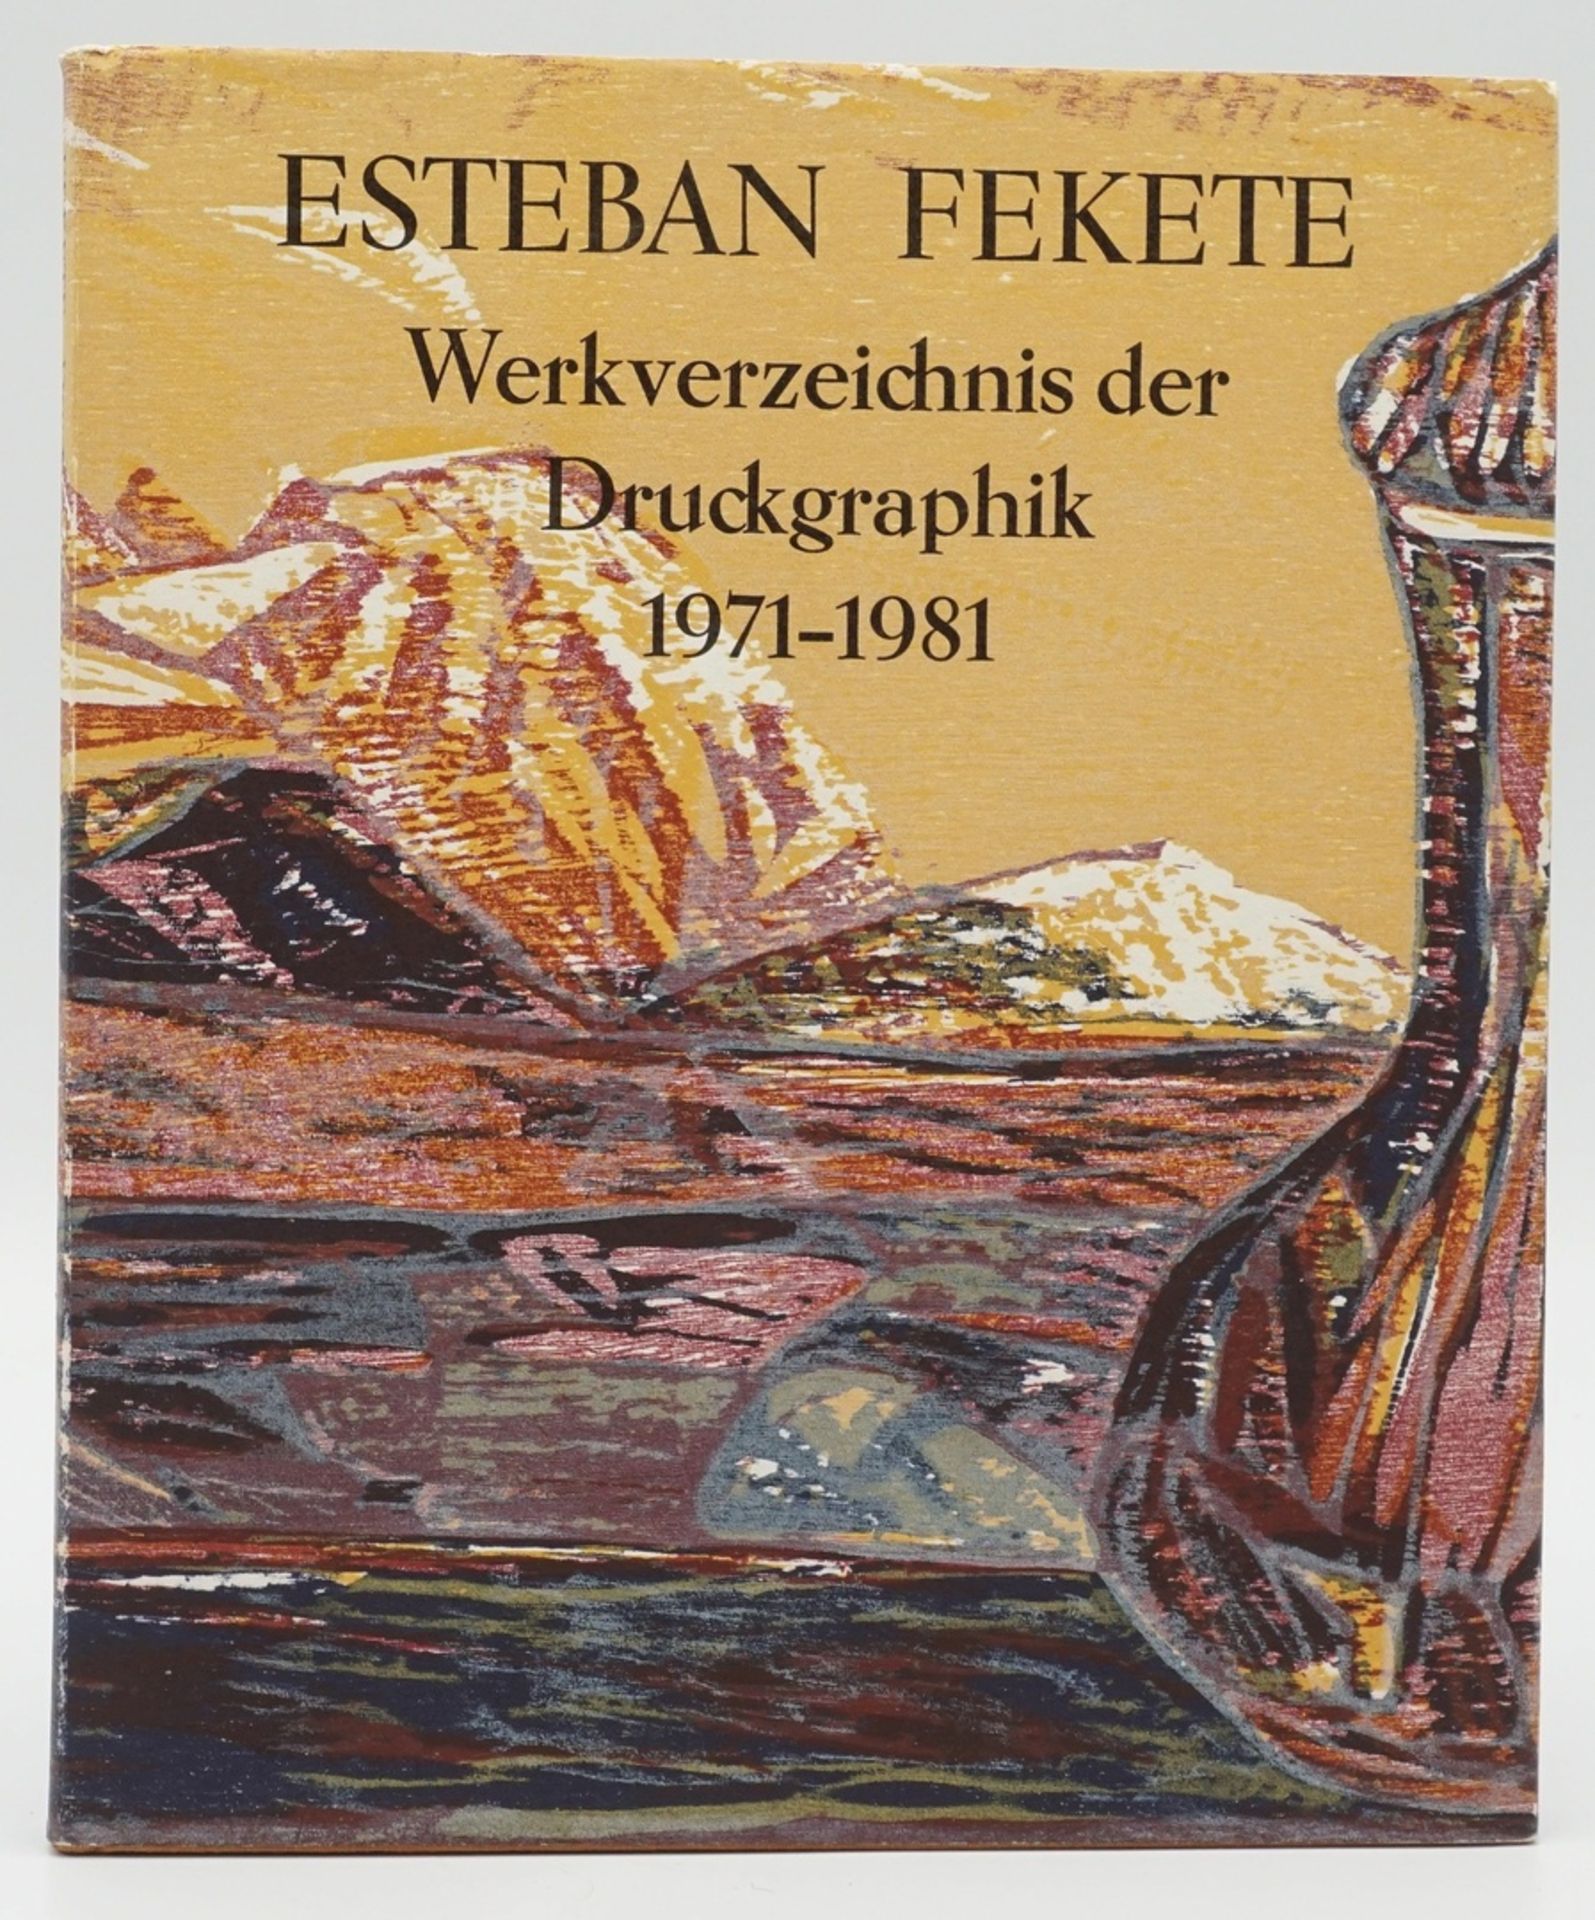 Ursula Paschke, "Esteban Fekete - Werkverzeichnis der Druckgraphik II 1971-1981"